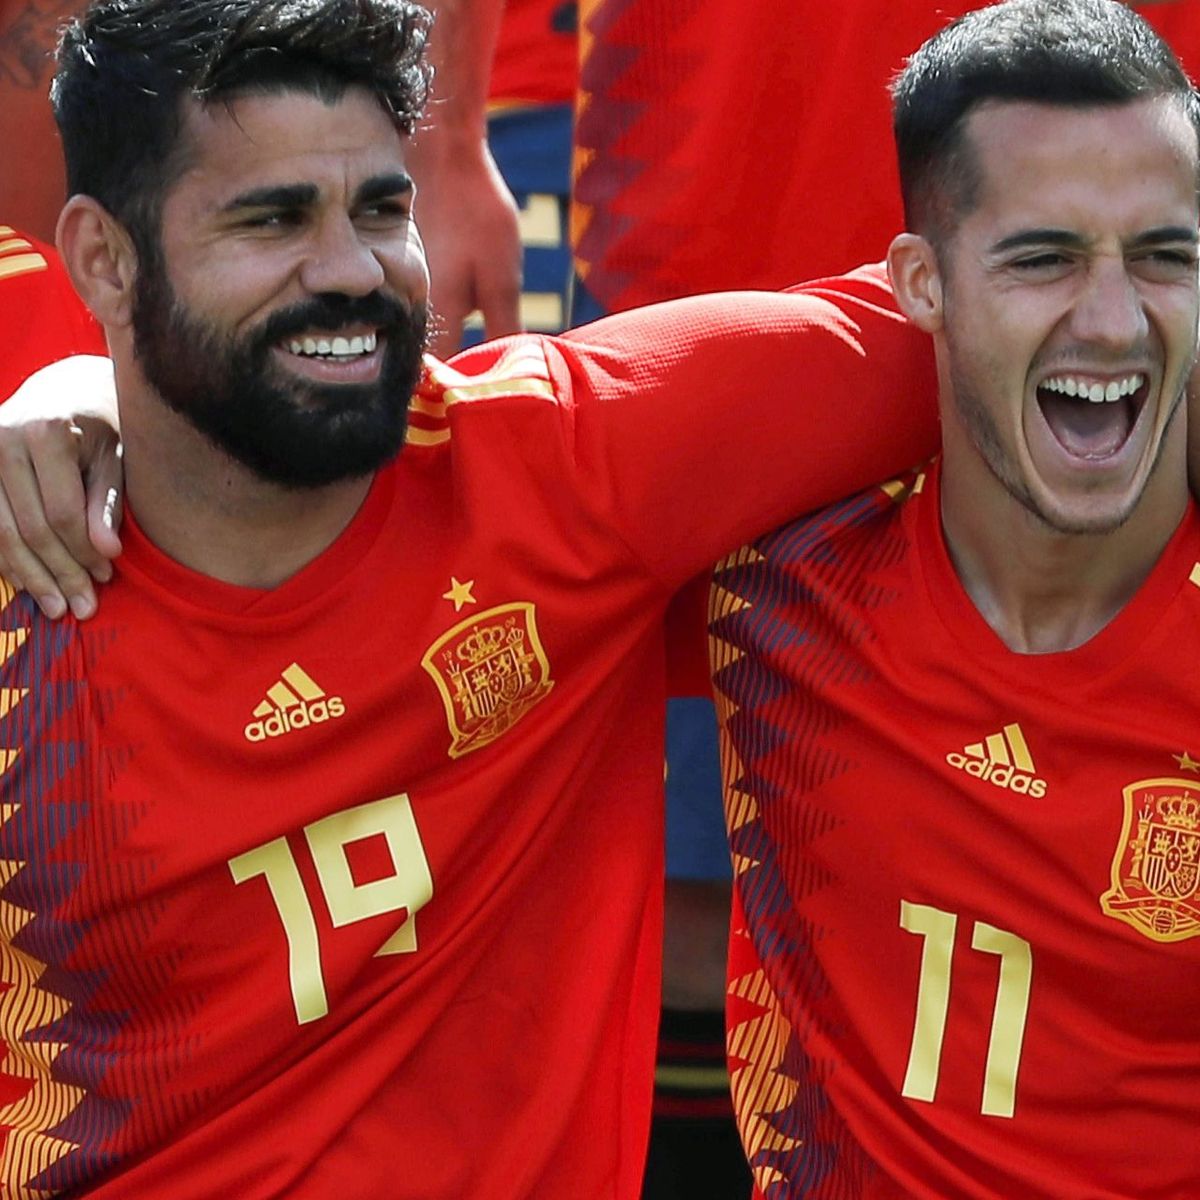 Esto es lo que se llevará cada jugador de selección si España gana el Mundial 2018